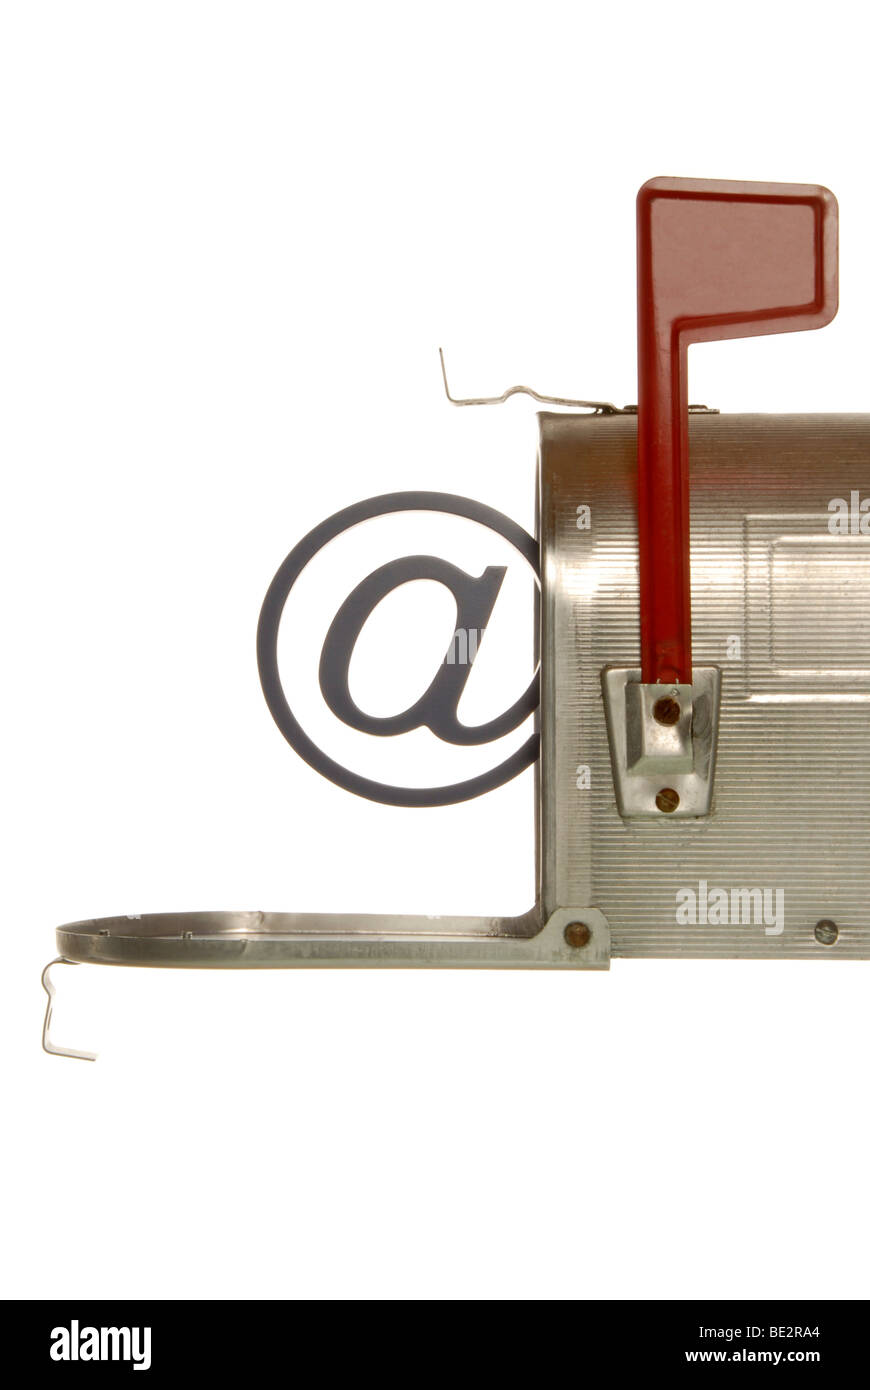 Amerikanischer Briefkasten mit @-Zeichen, Symbol für e-mail Stockfotografie  - Alamy